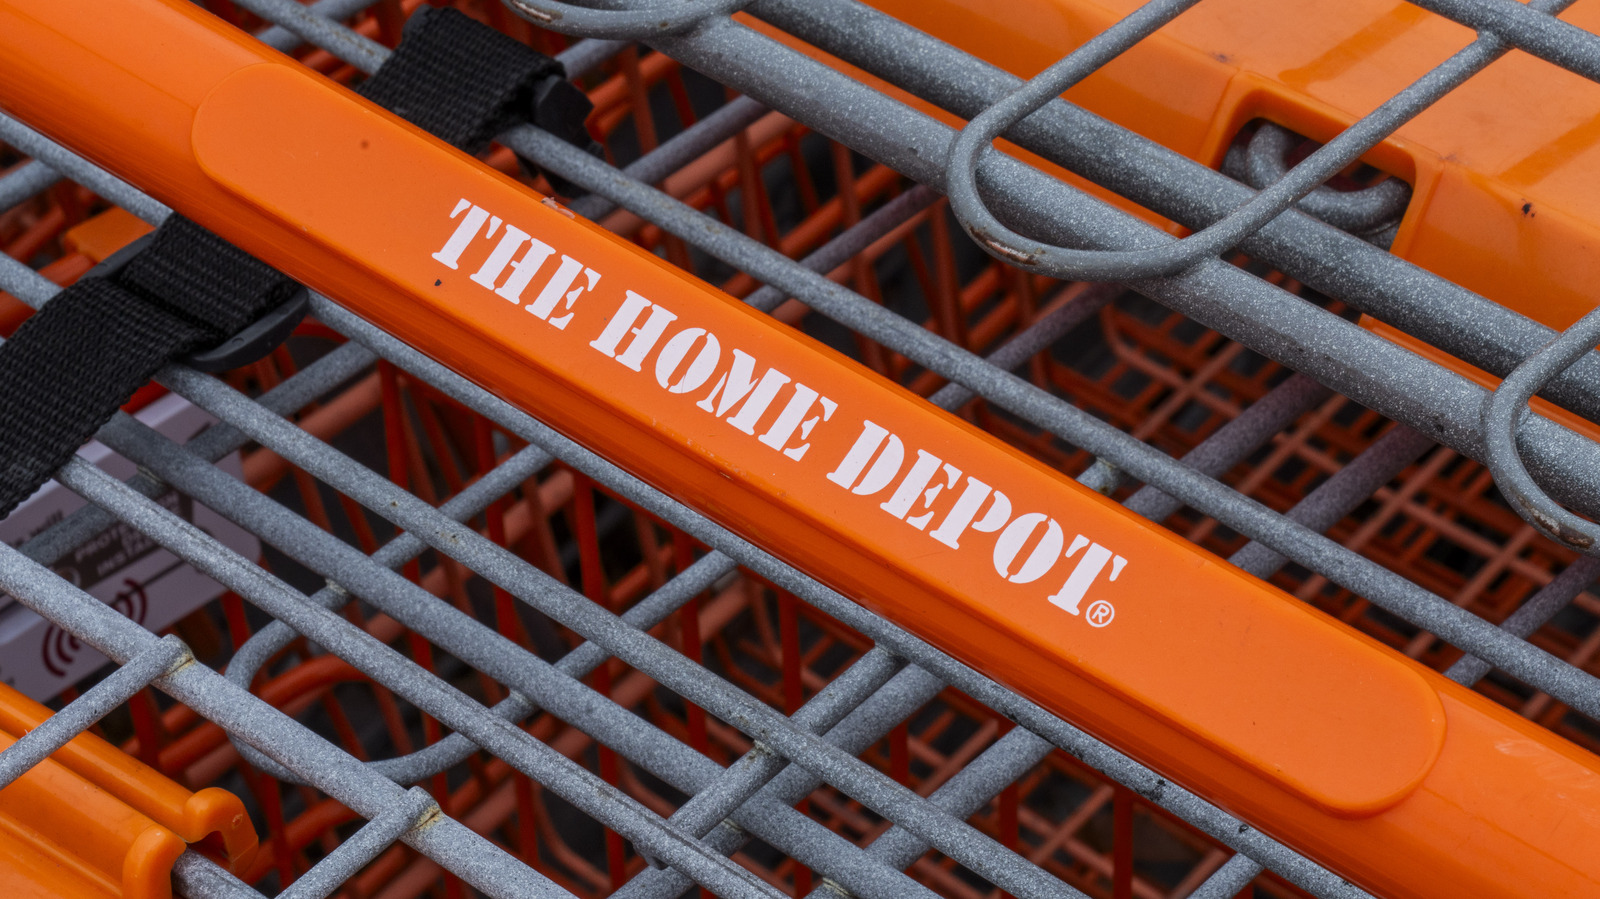 Las 5 mejores herramientas económicas que vale la pena comprar en Home Depot